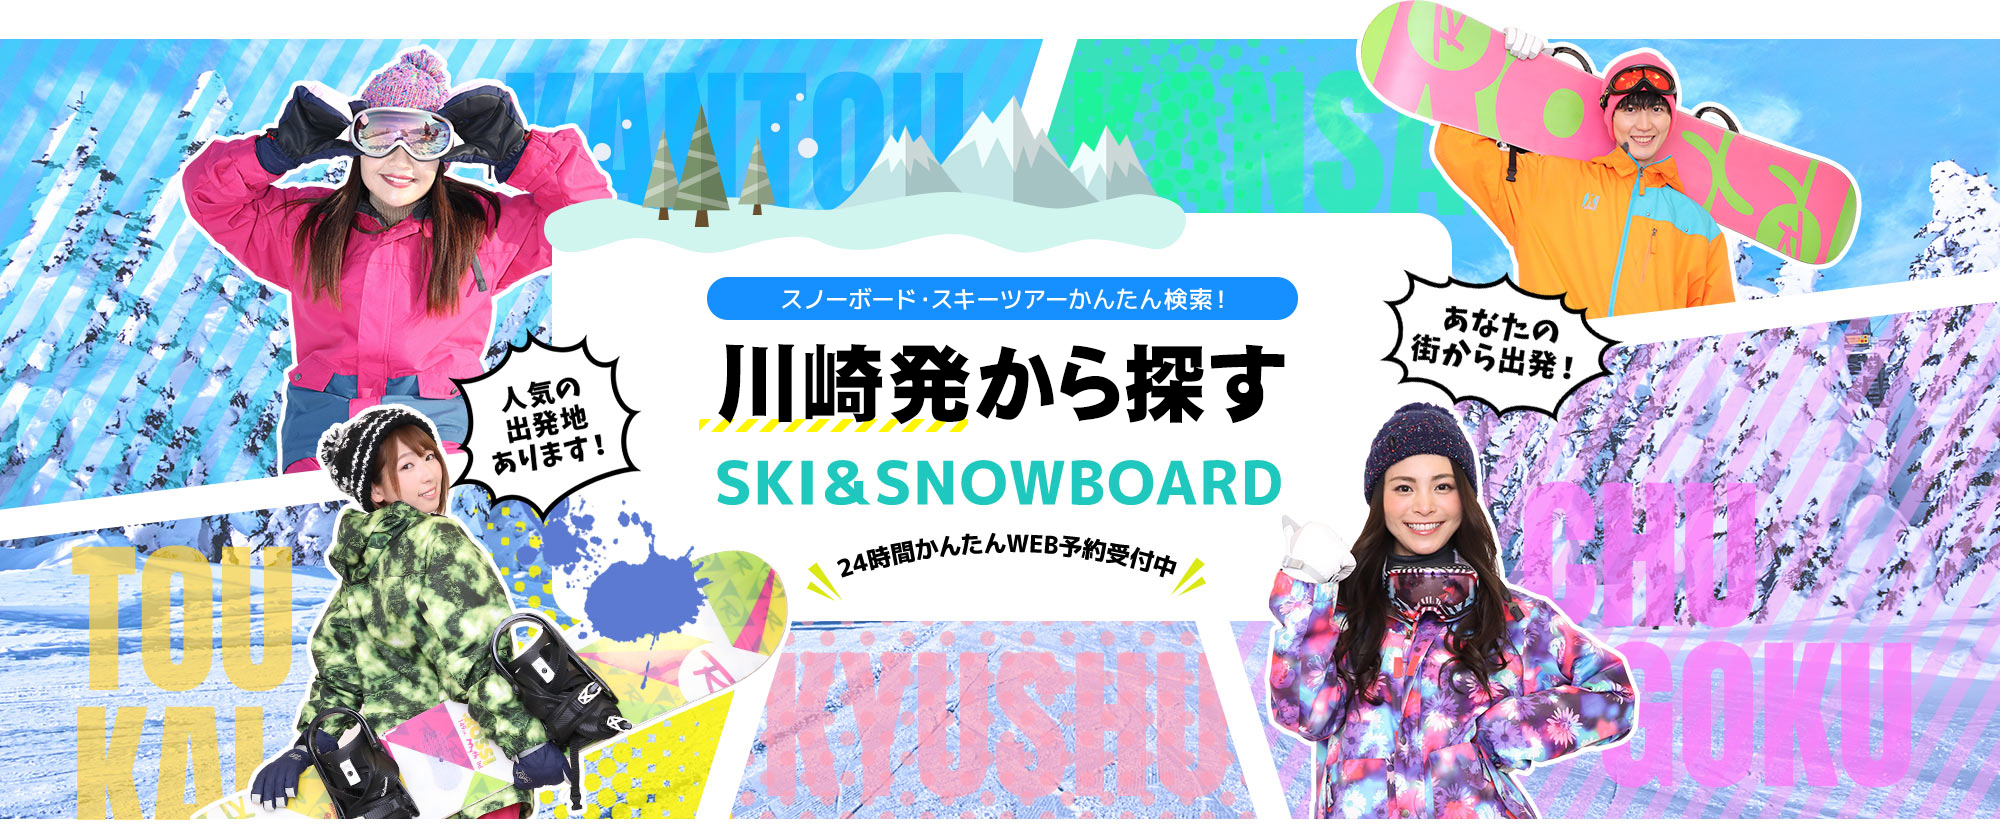 スノーボード・スキーツアーかんたん検索！ 川崎発から探す SKI&SNOWBOARD